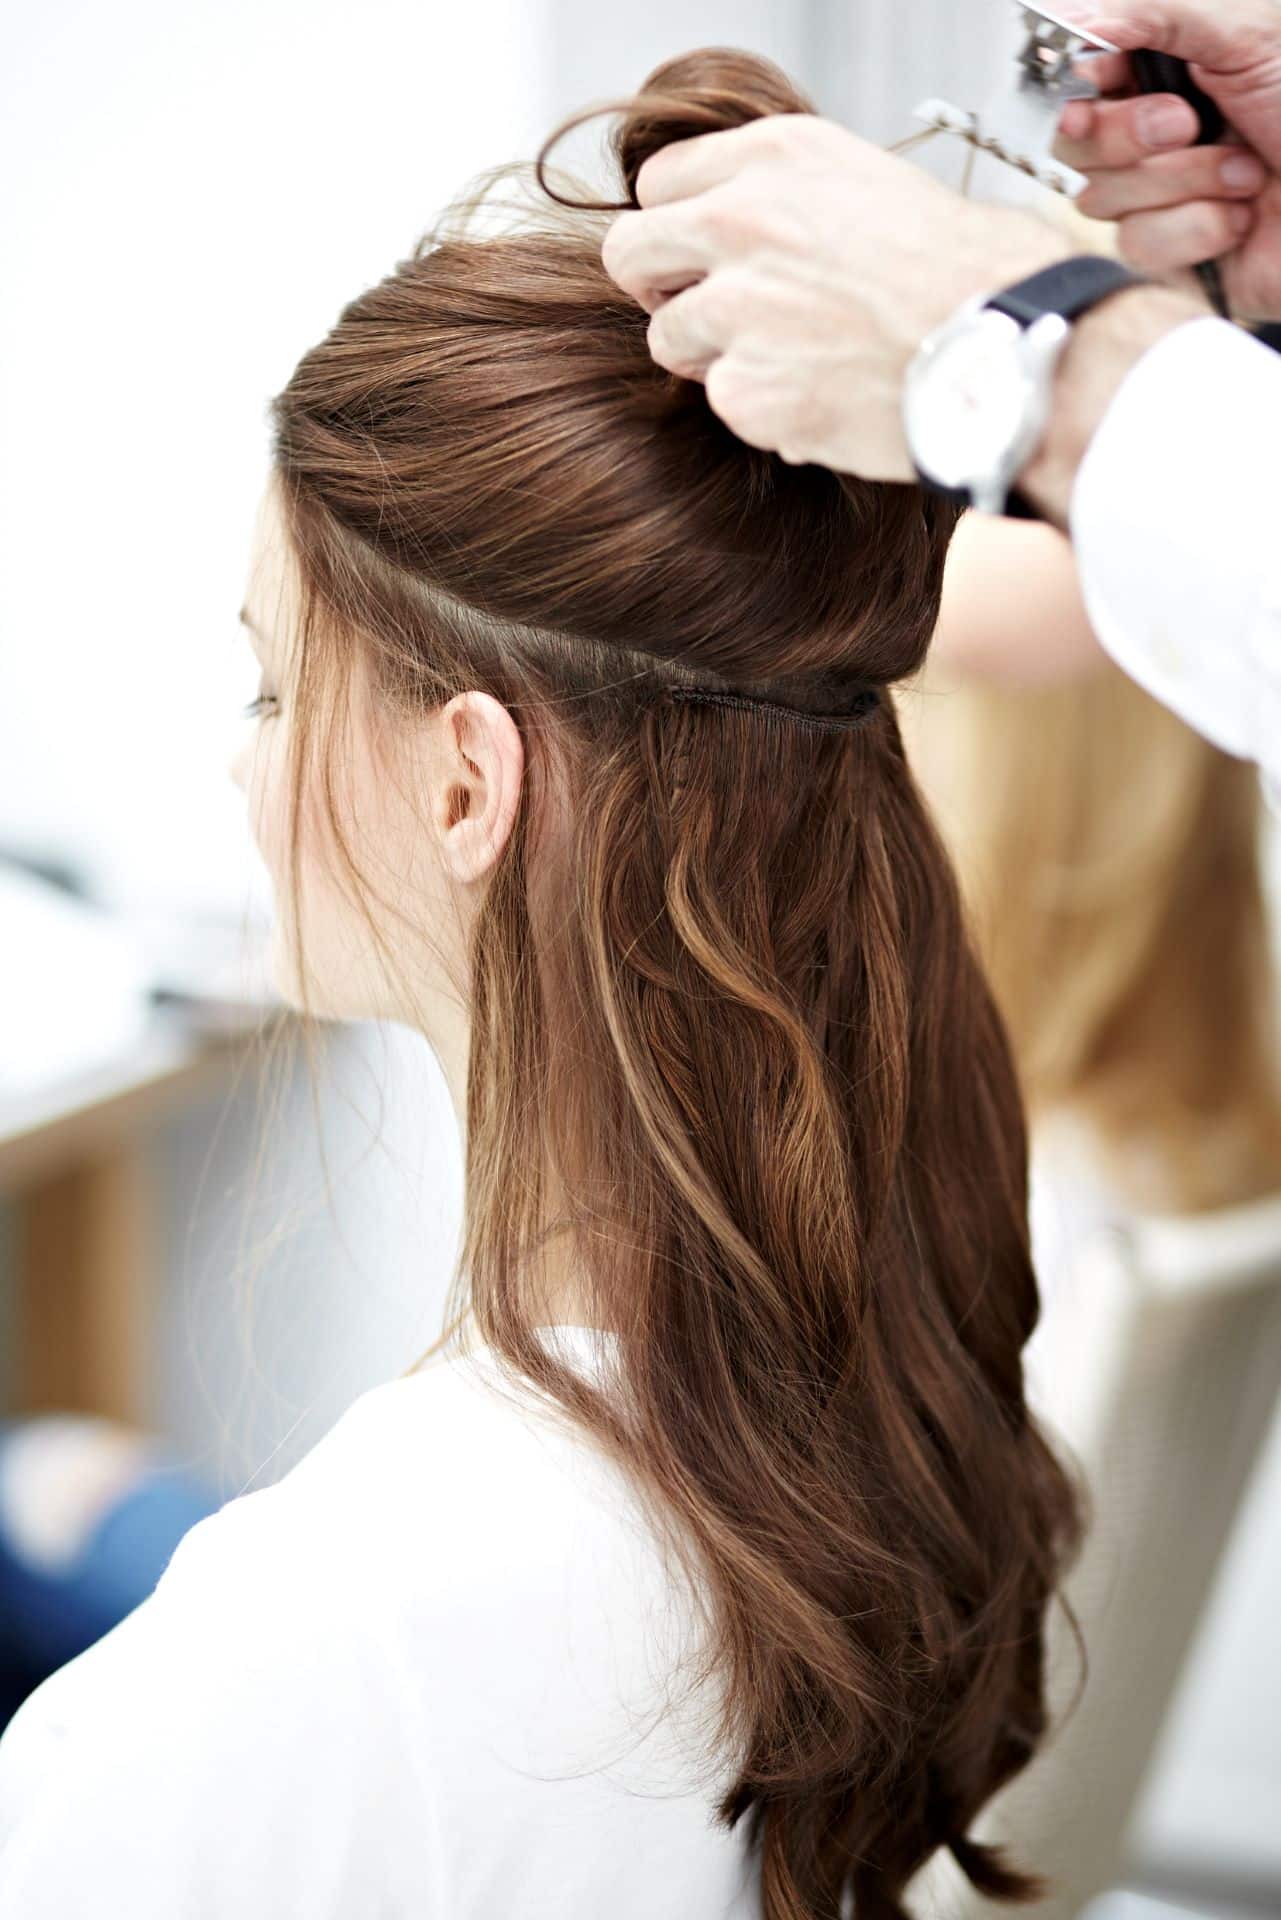 Friseur hebt die oberen Haare einer Kundin hoch, wodurch die eingearbeiteten Echthaar-Tressen von Hairdreams zu sehen sind.